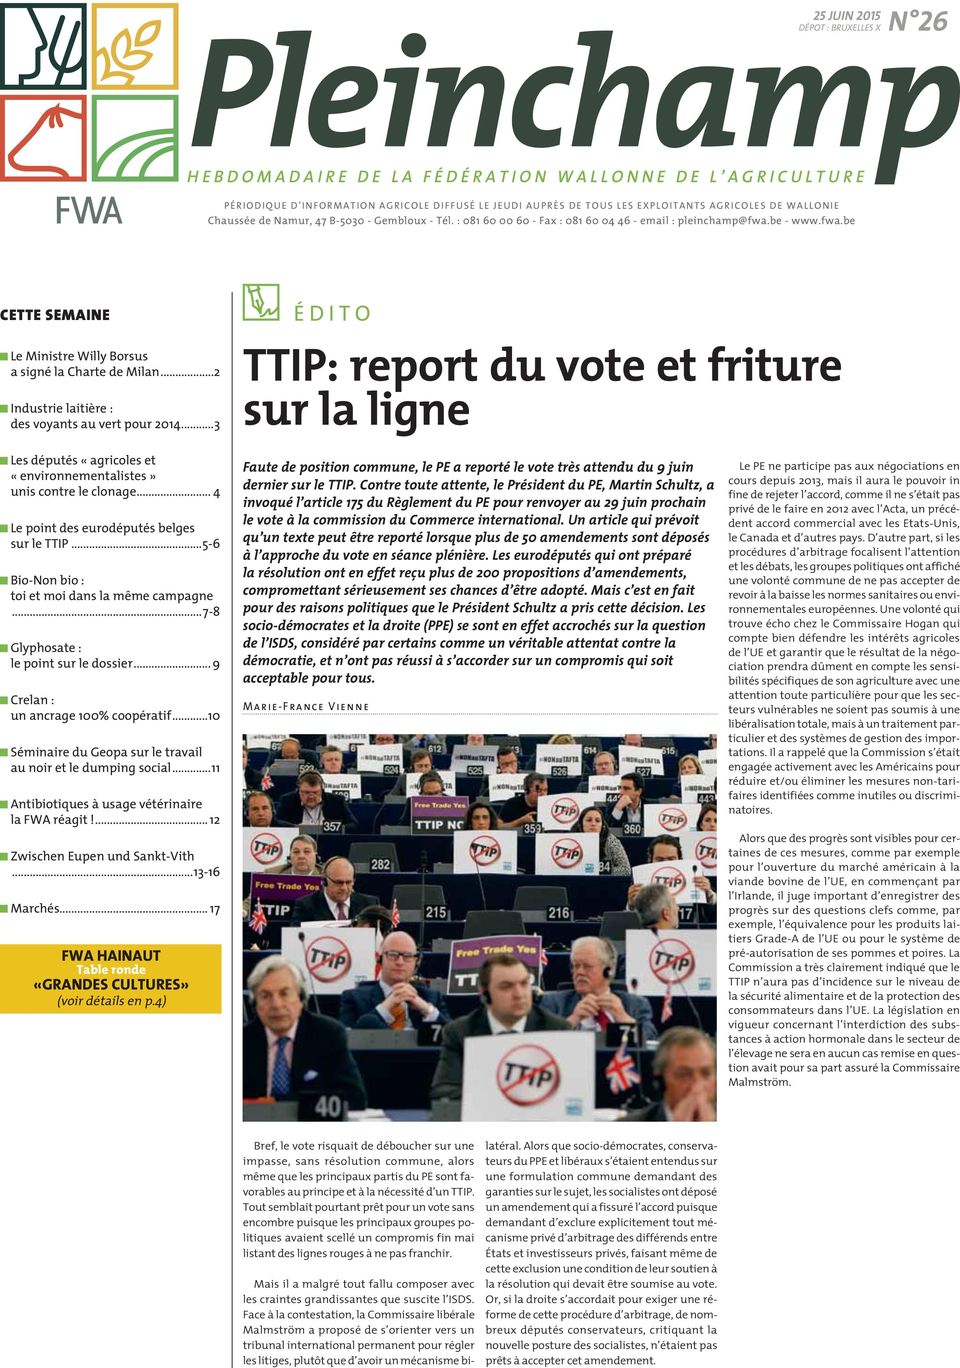 ..2 Industrie laitière : des voyants au vert pour 2014...3 ÉDITO TTIP: report du vote et friture sur la ligne Les députés «agricoles et «environnementalistes» unis contre le clonage.